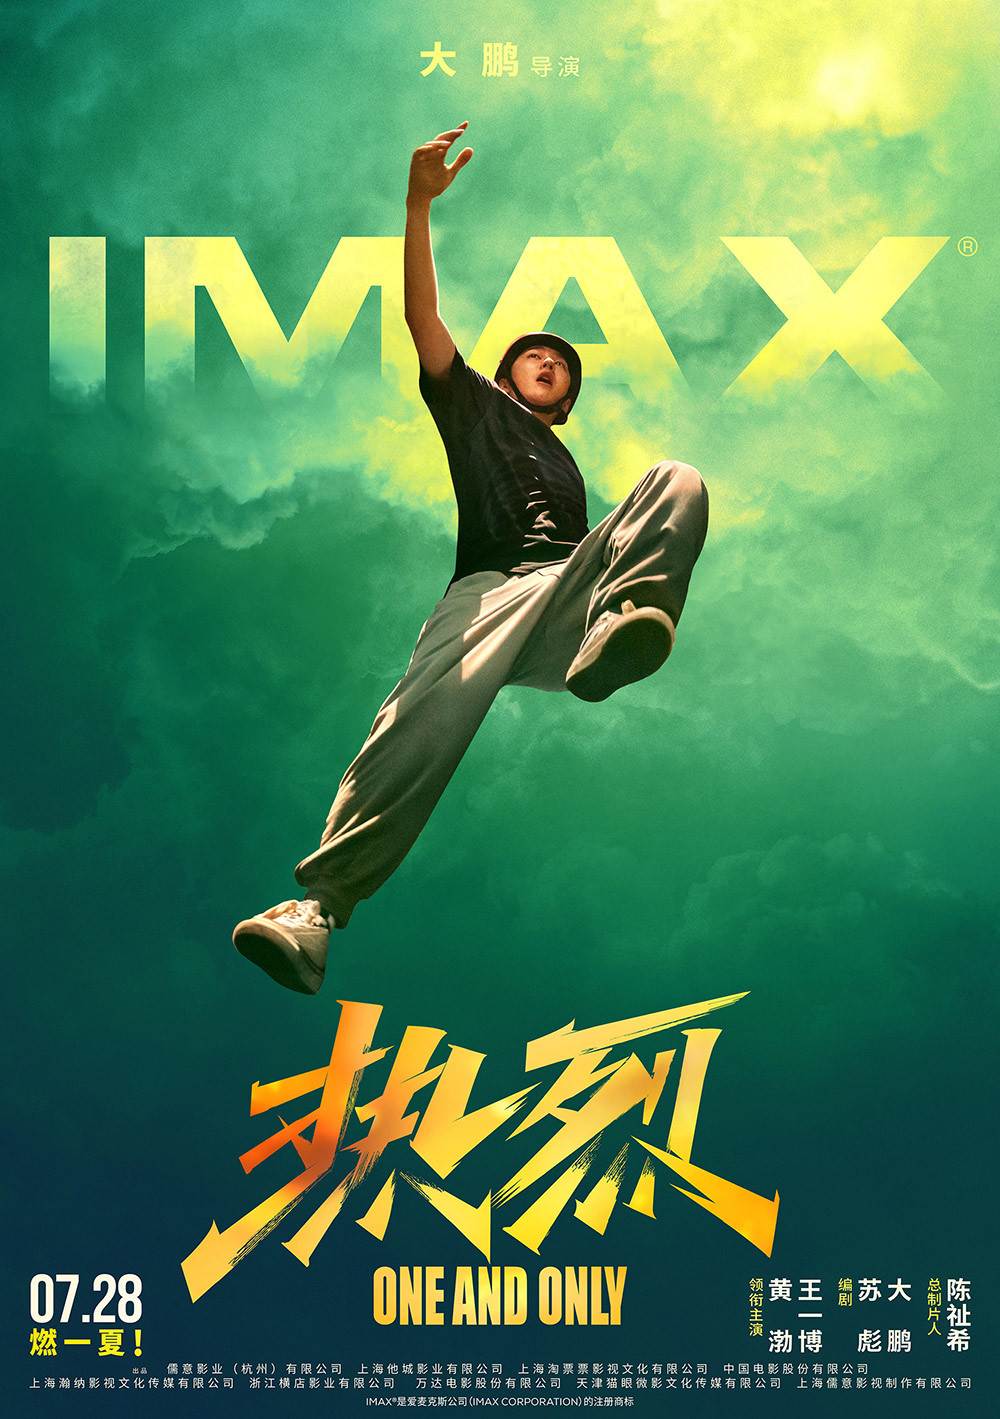 【影視動漫】IMAX在京舉辦《熱烈》觀影 20分鐘大賽場面必看IMAX